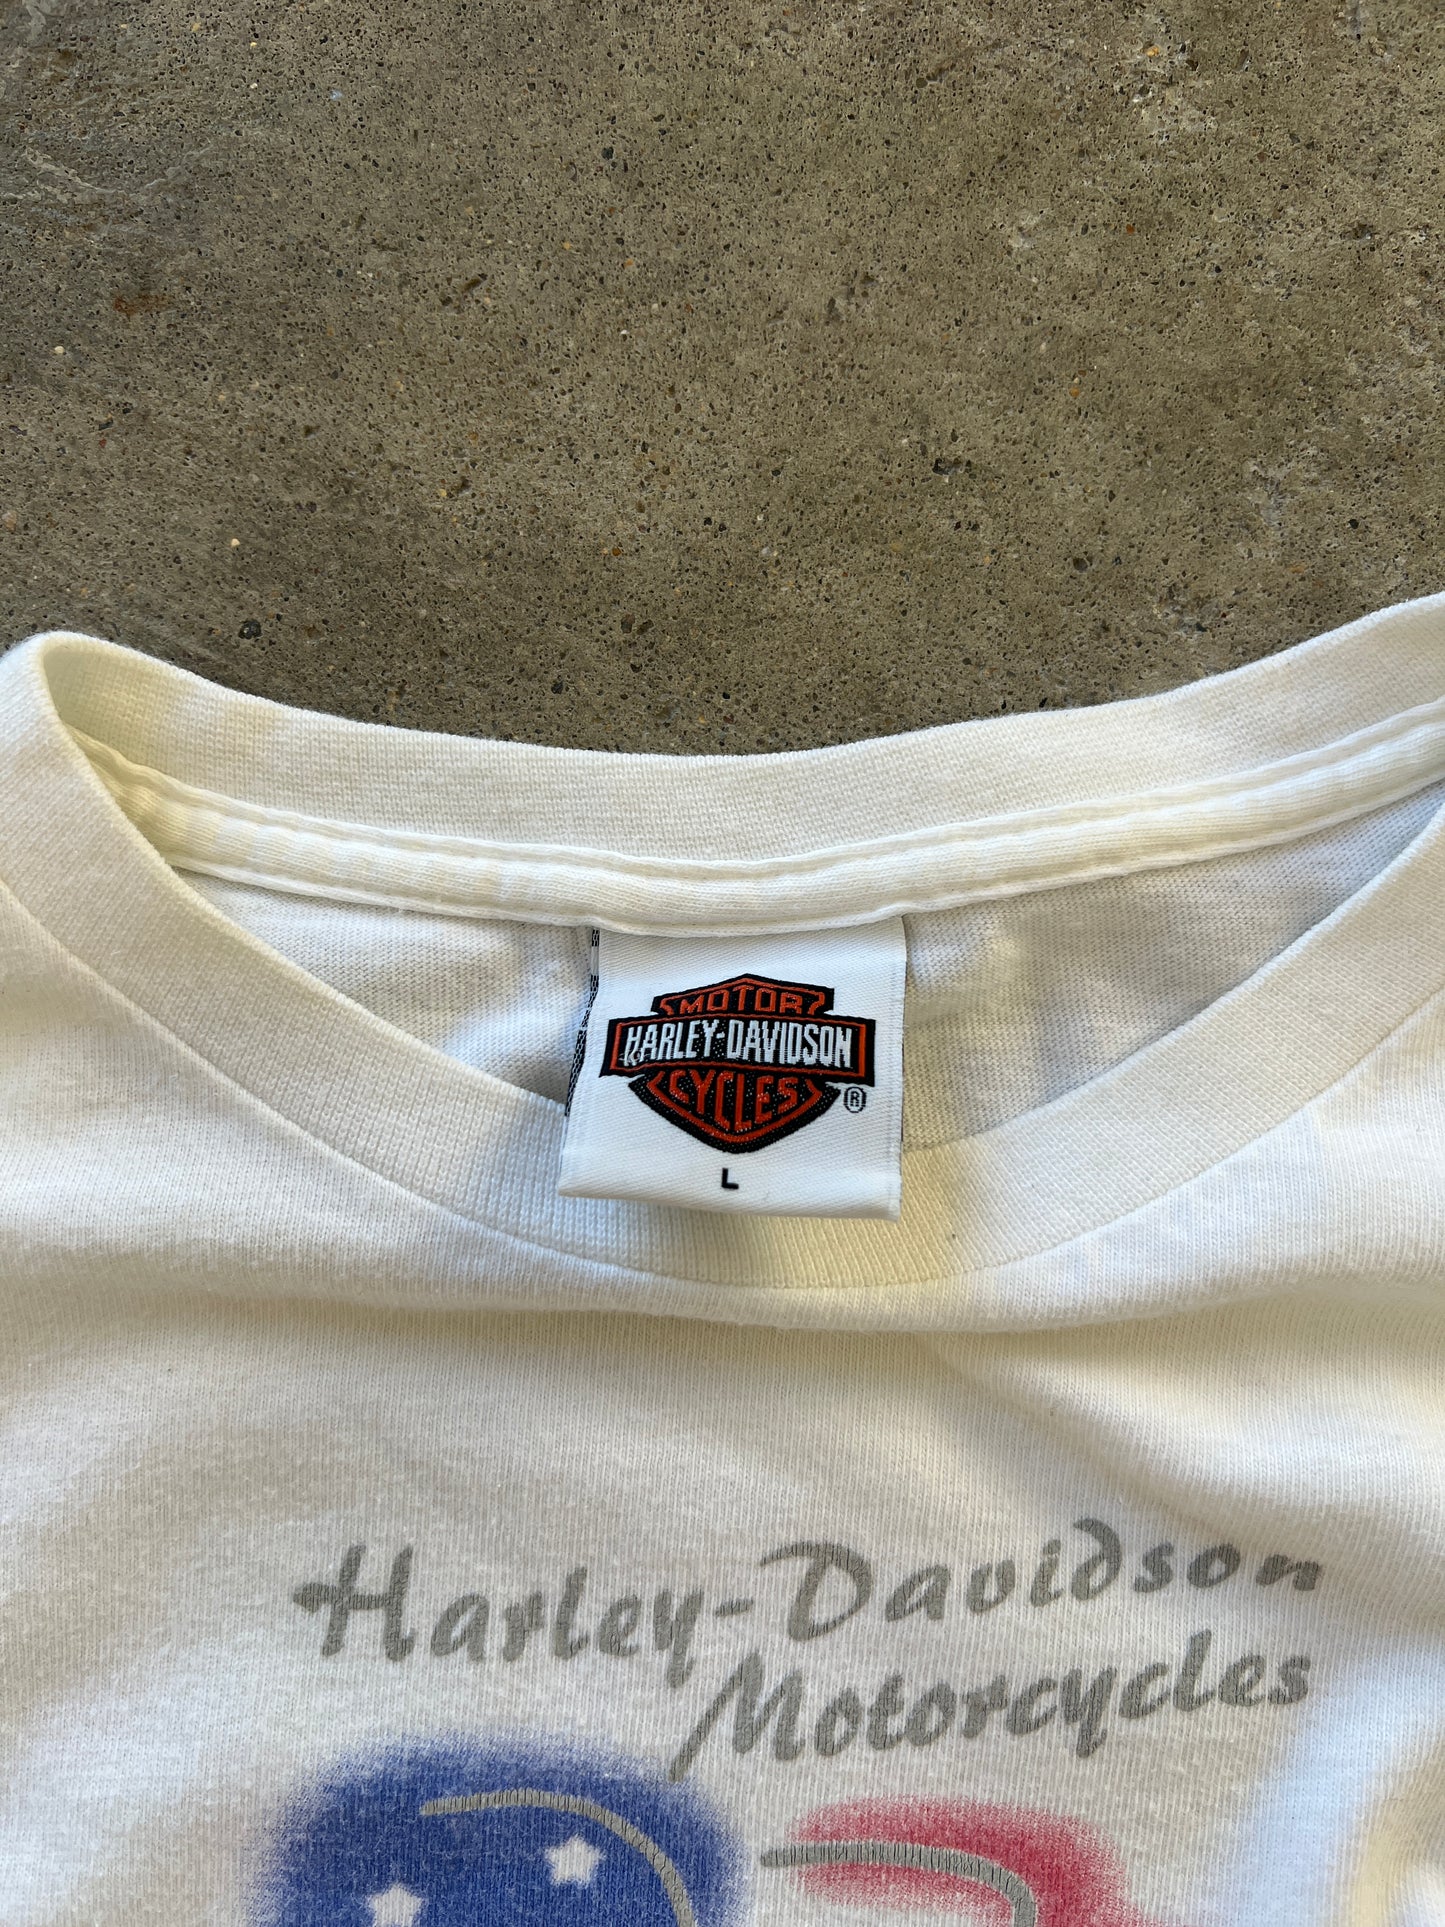 Vintage Harley Davidson Shirt - M